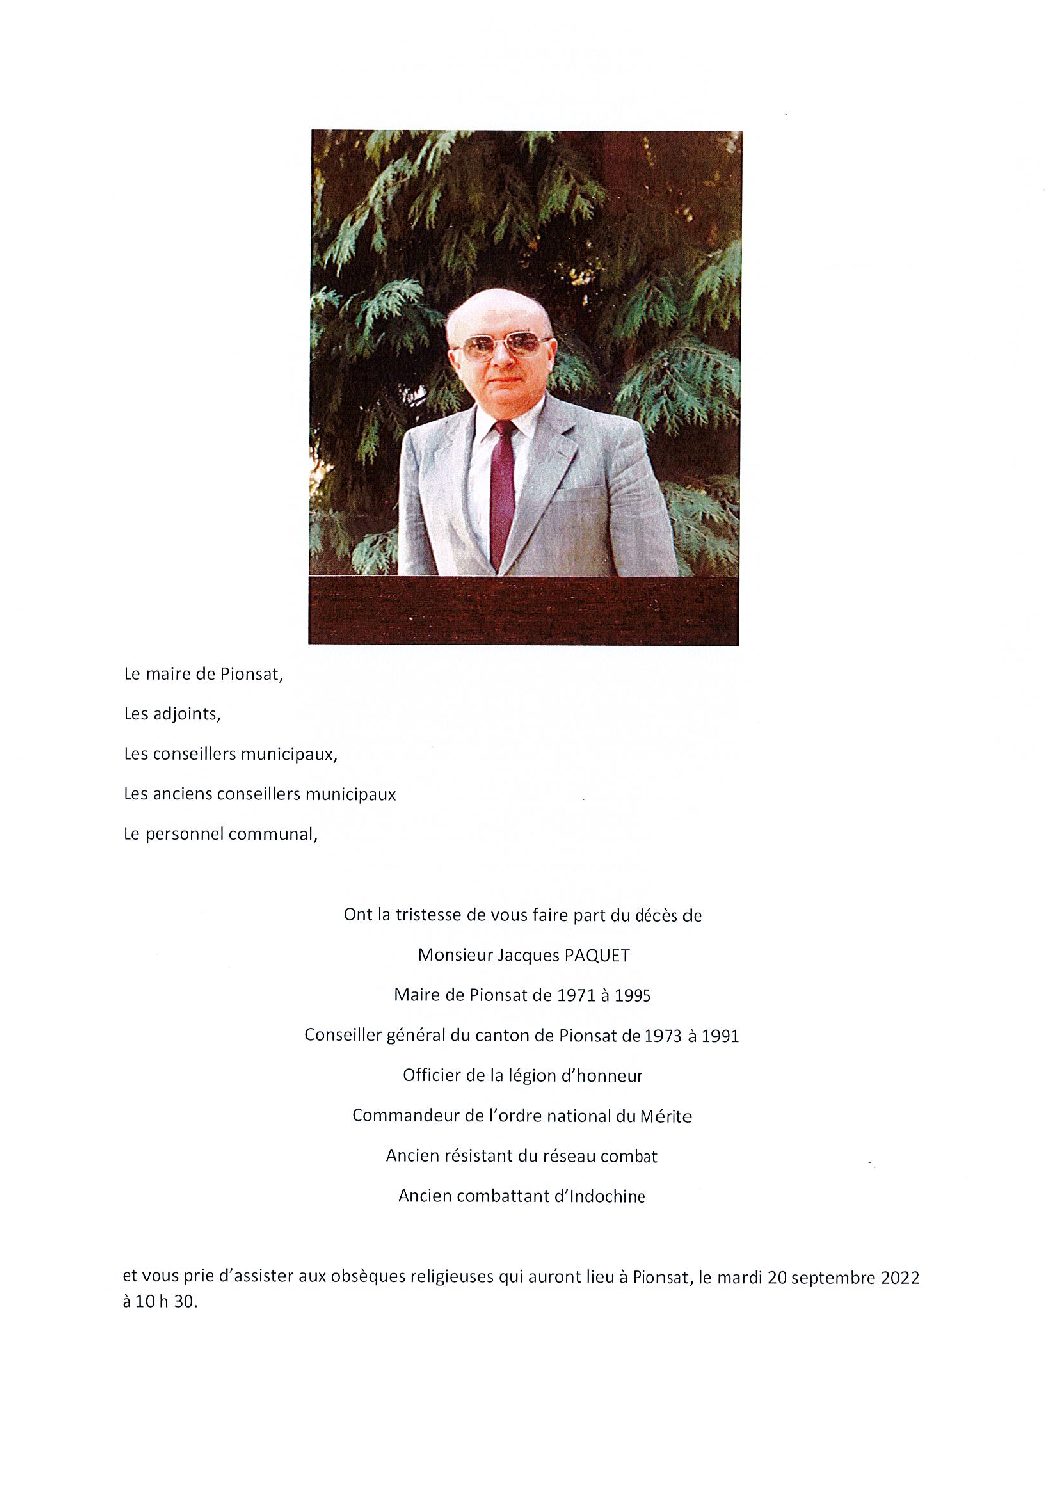 Décès de Monsieur Paquet Jacques – Maire de Pionsat de 1971 à 1995